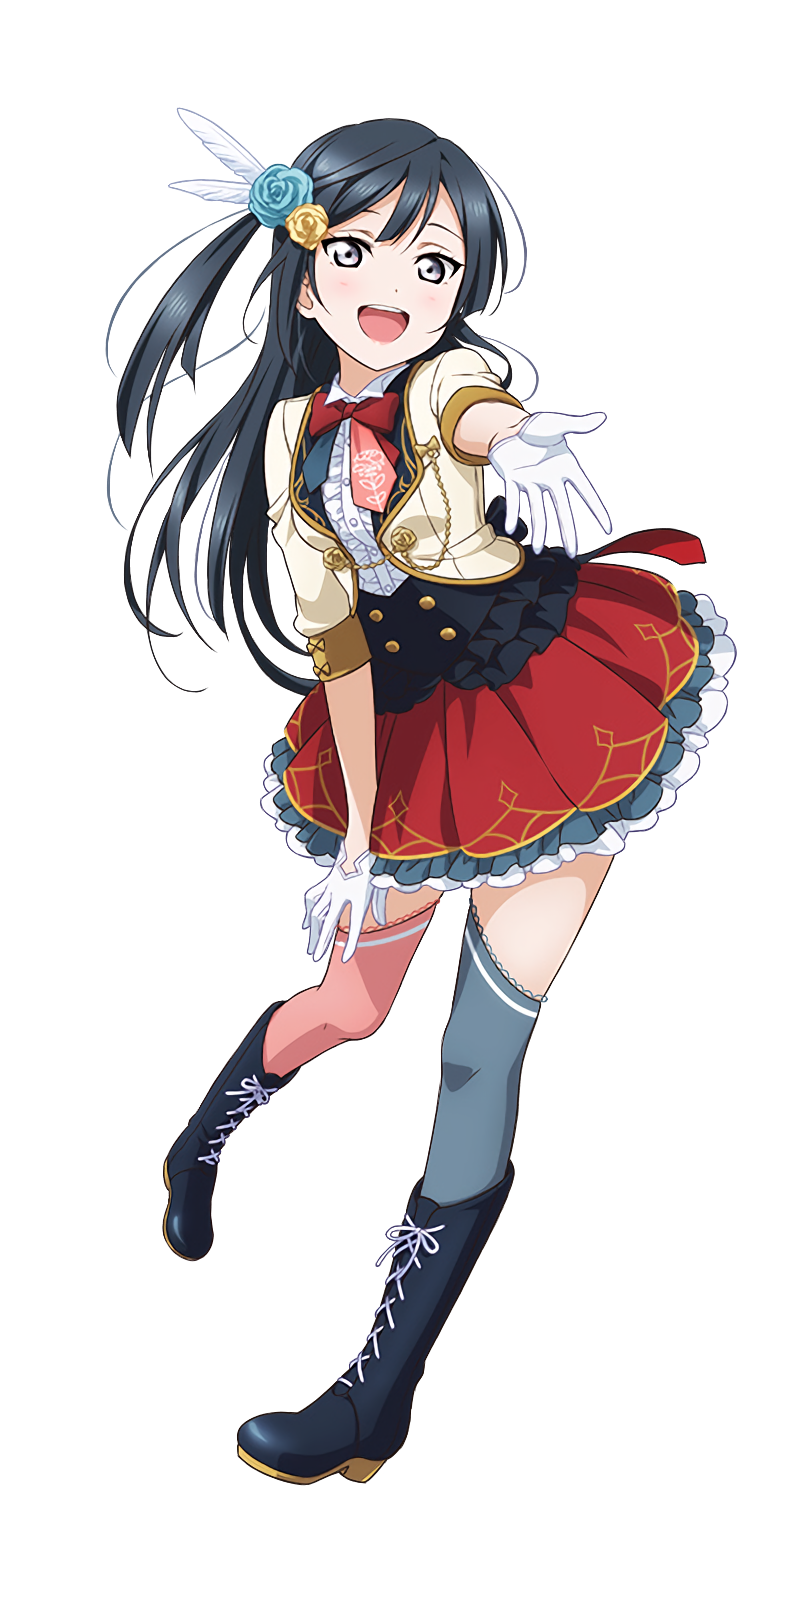 Setsuna Yuki, Love Live! Wiki